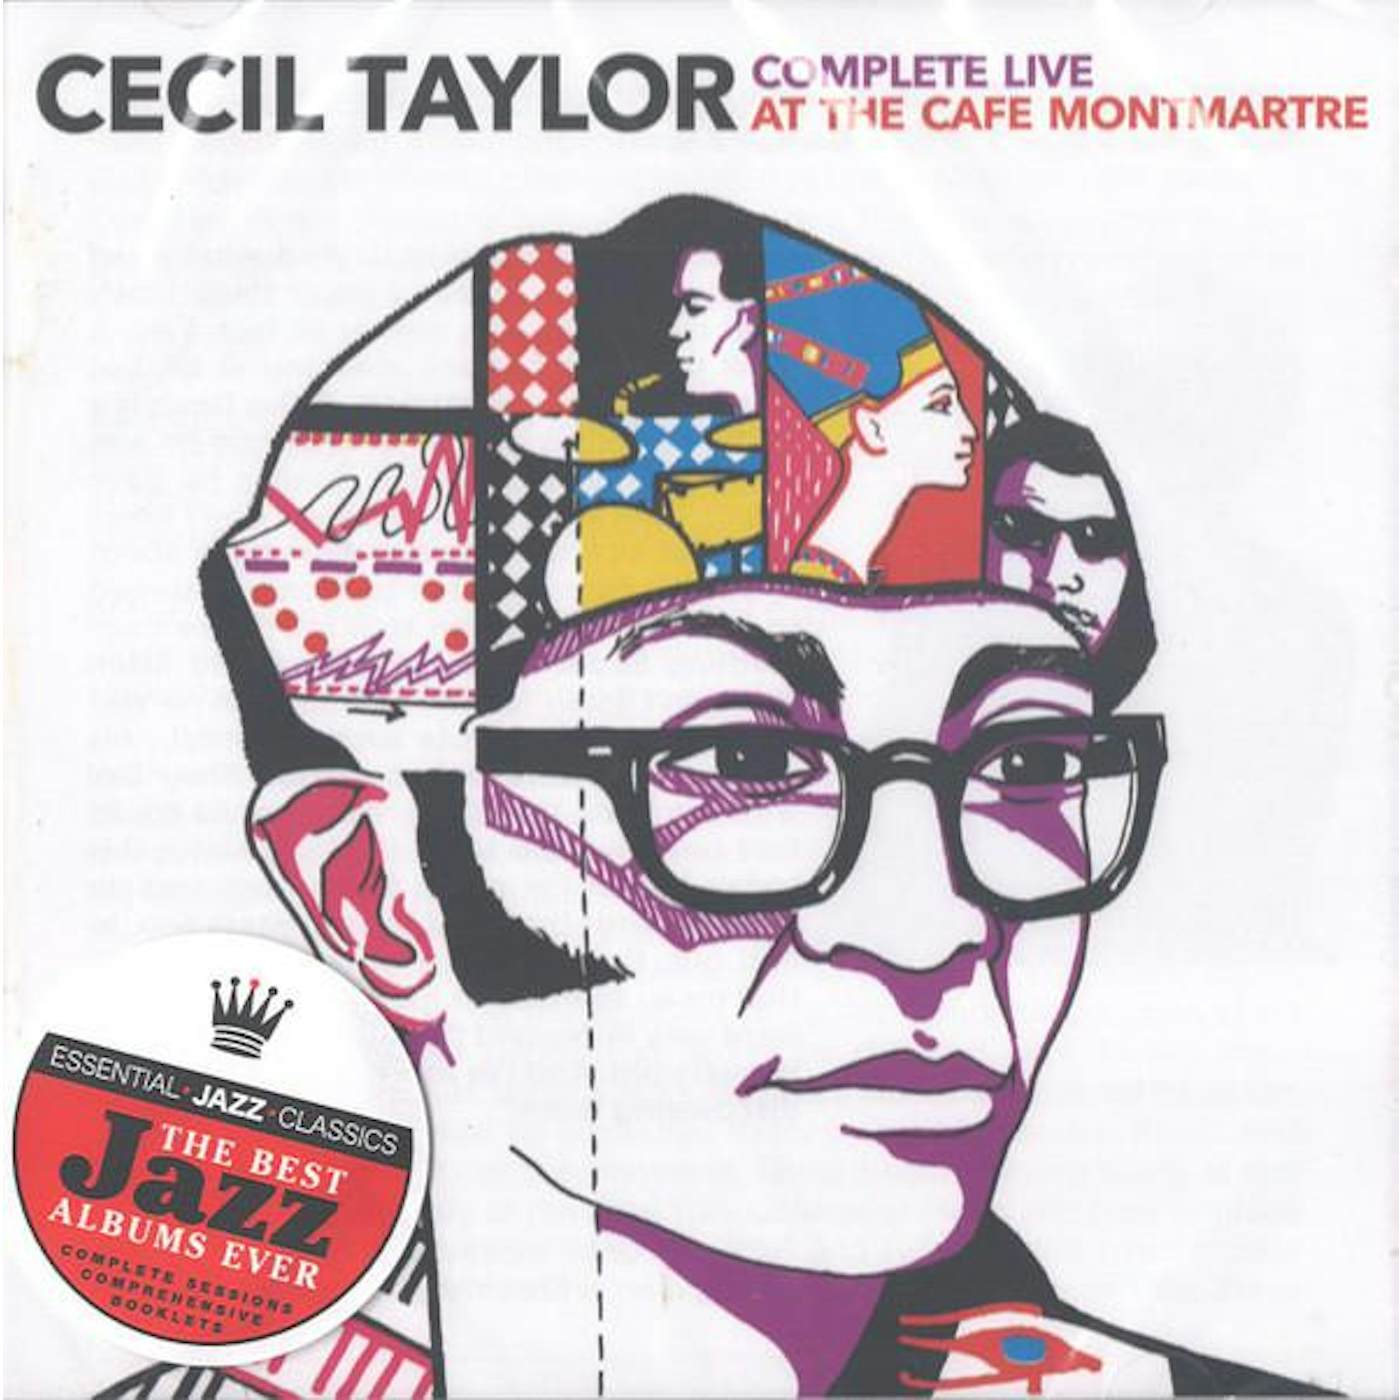 Cecil Taylor COMPLETE LIVE AT CAFE MONTMARTRE (24BIT REMASTER/3 BONUS TRACKS) CD